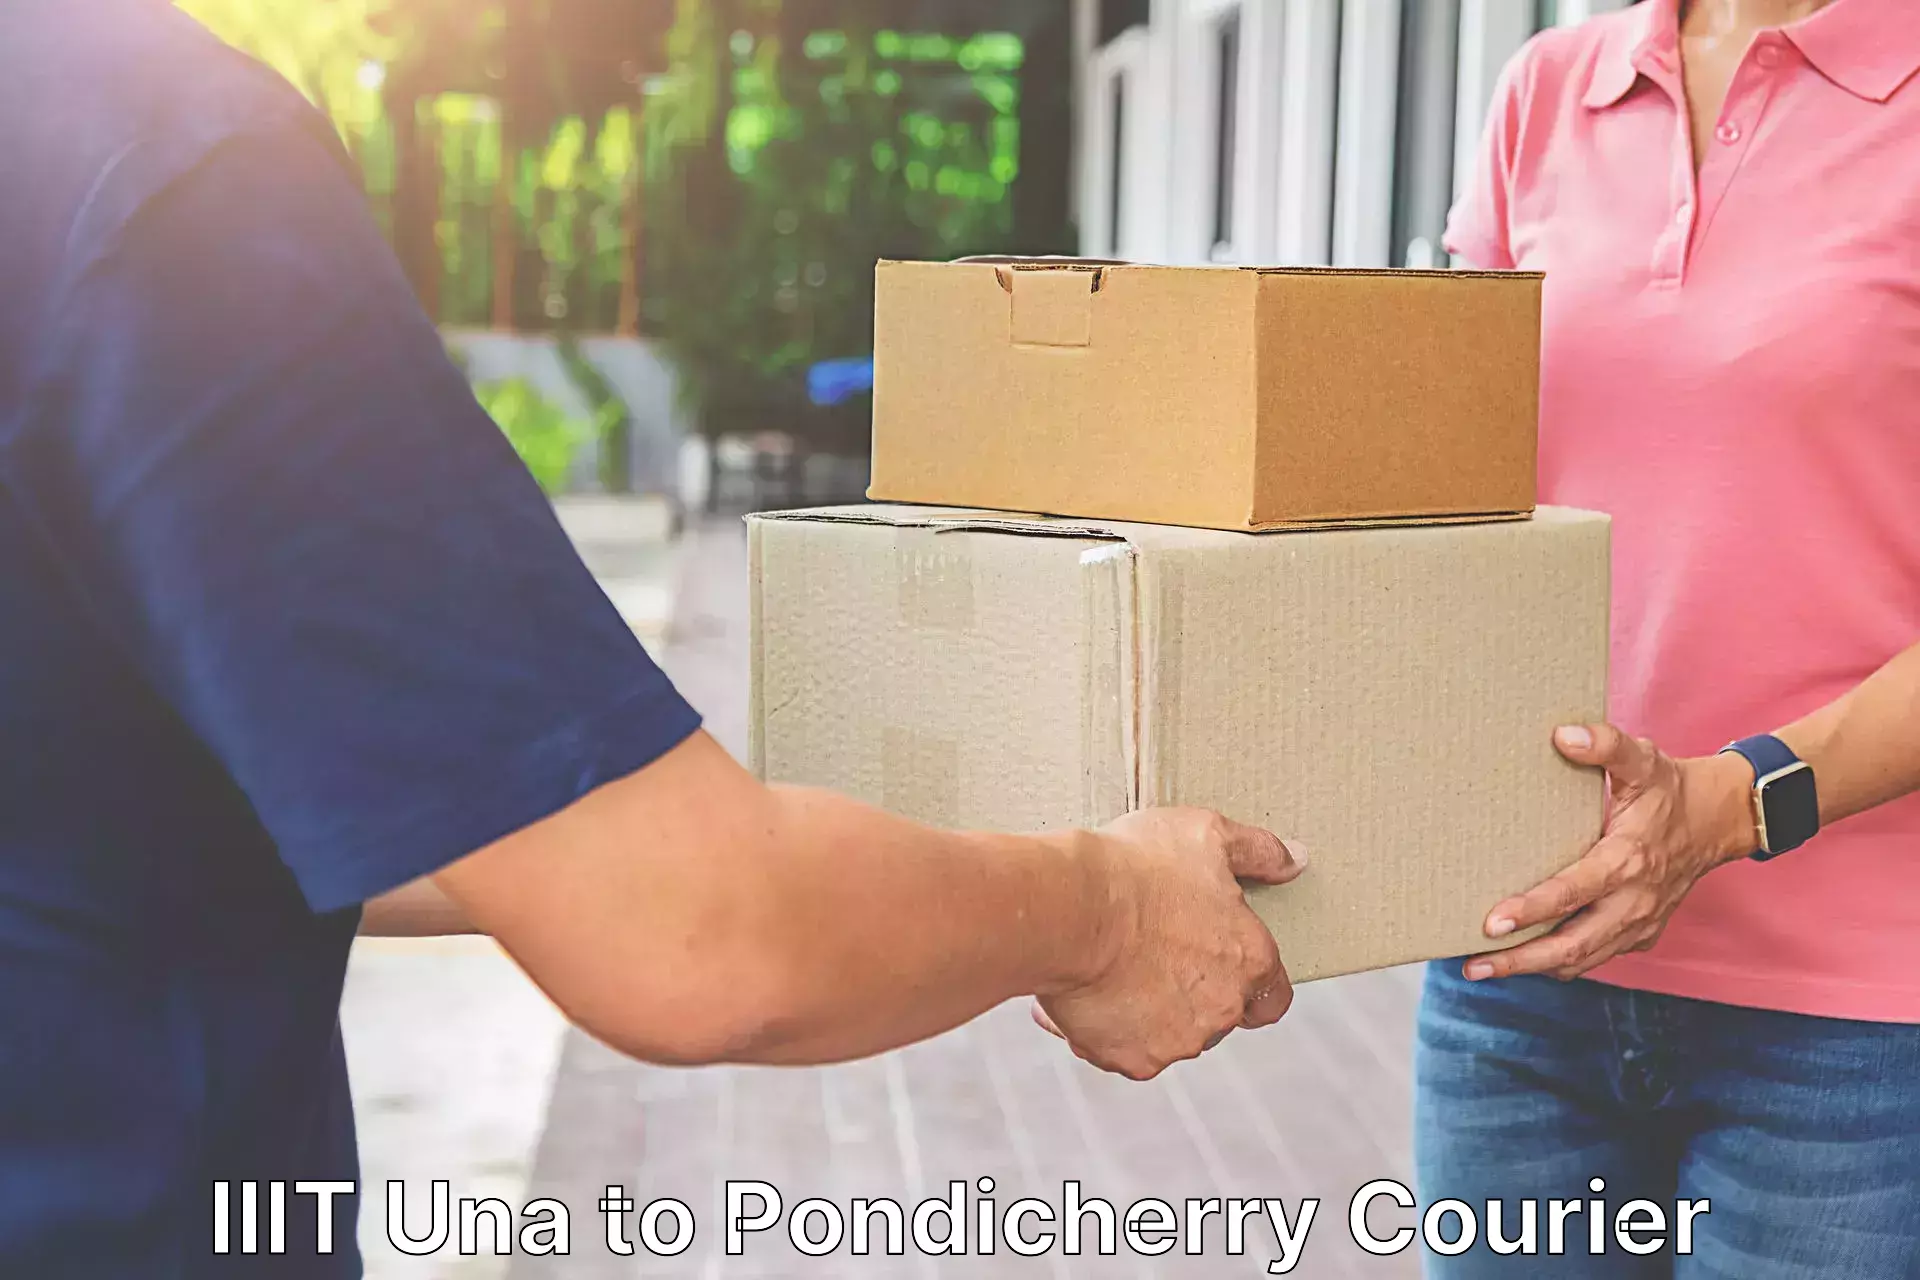 Premium courier services IIIT Una to NIT Puducherry